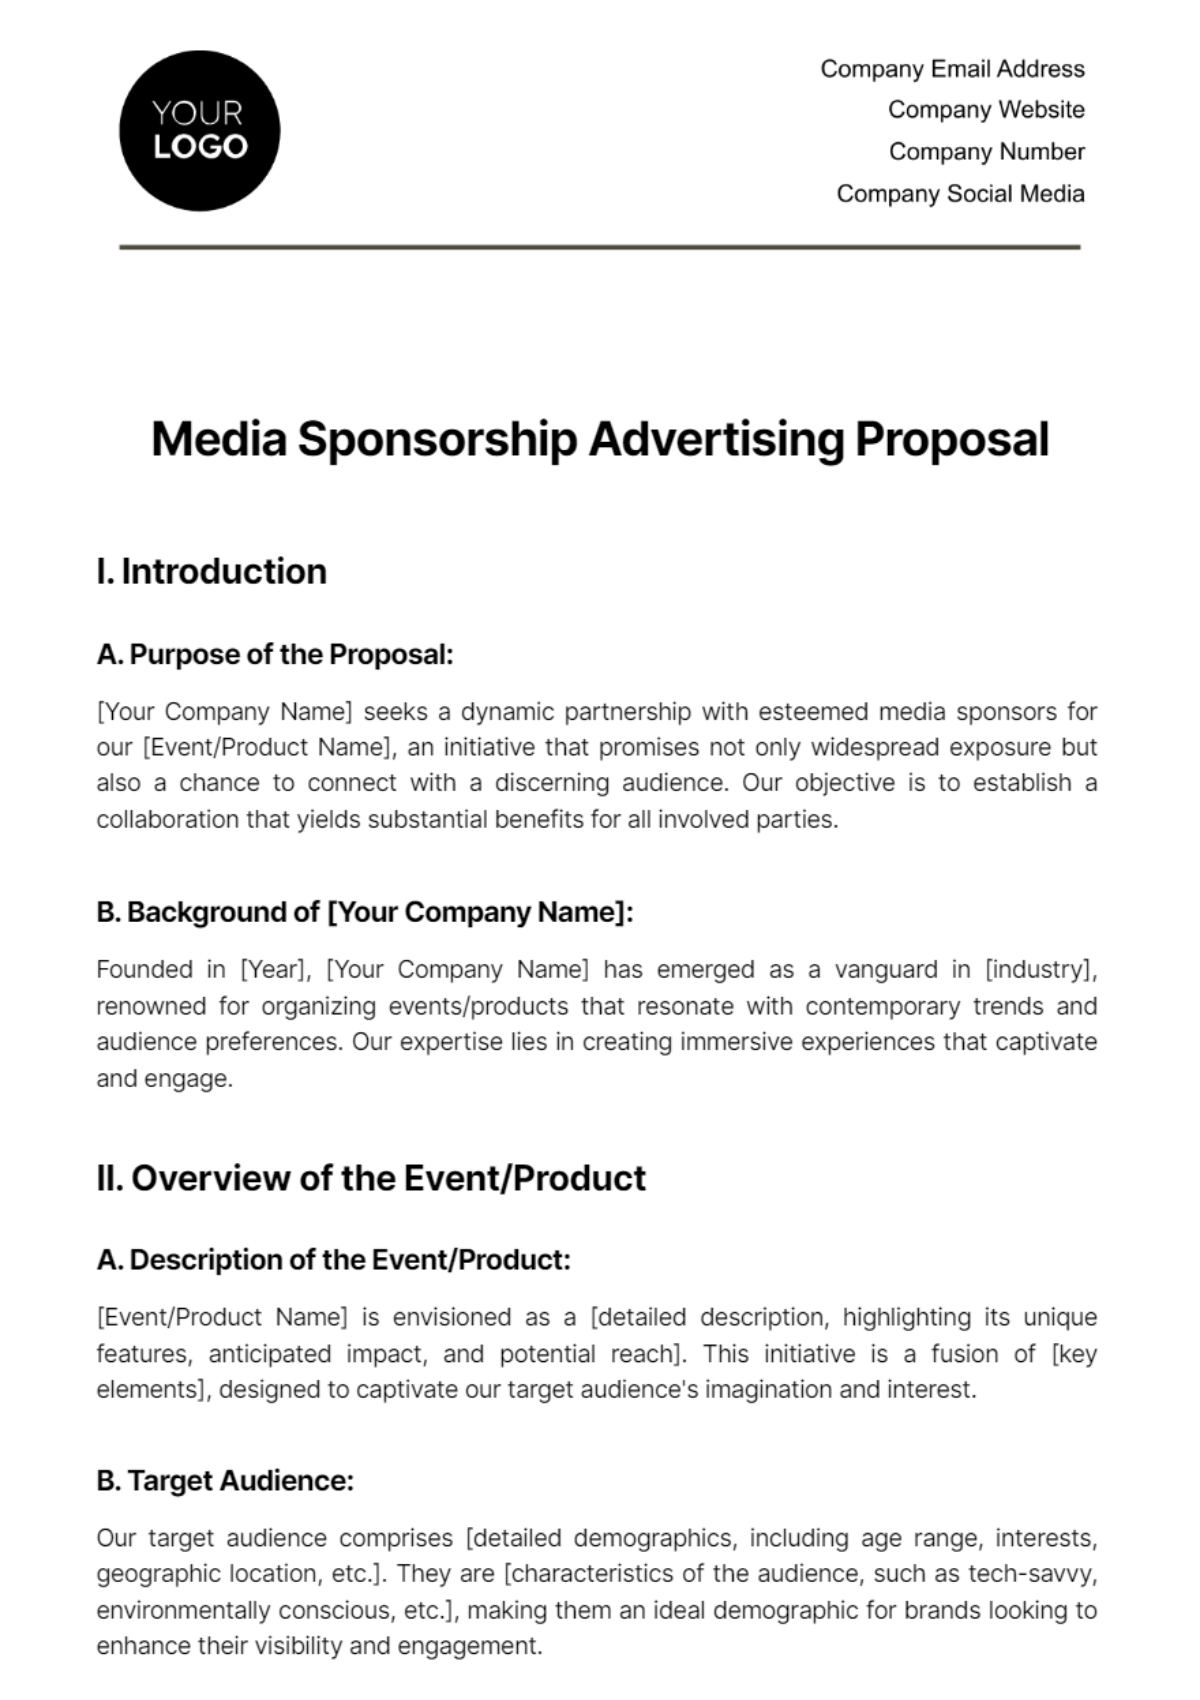 Free Media Sponsorship Advertising Proposal Template